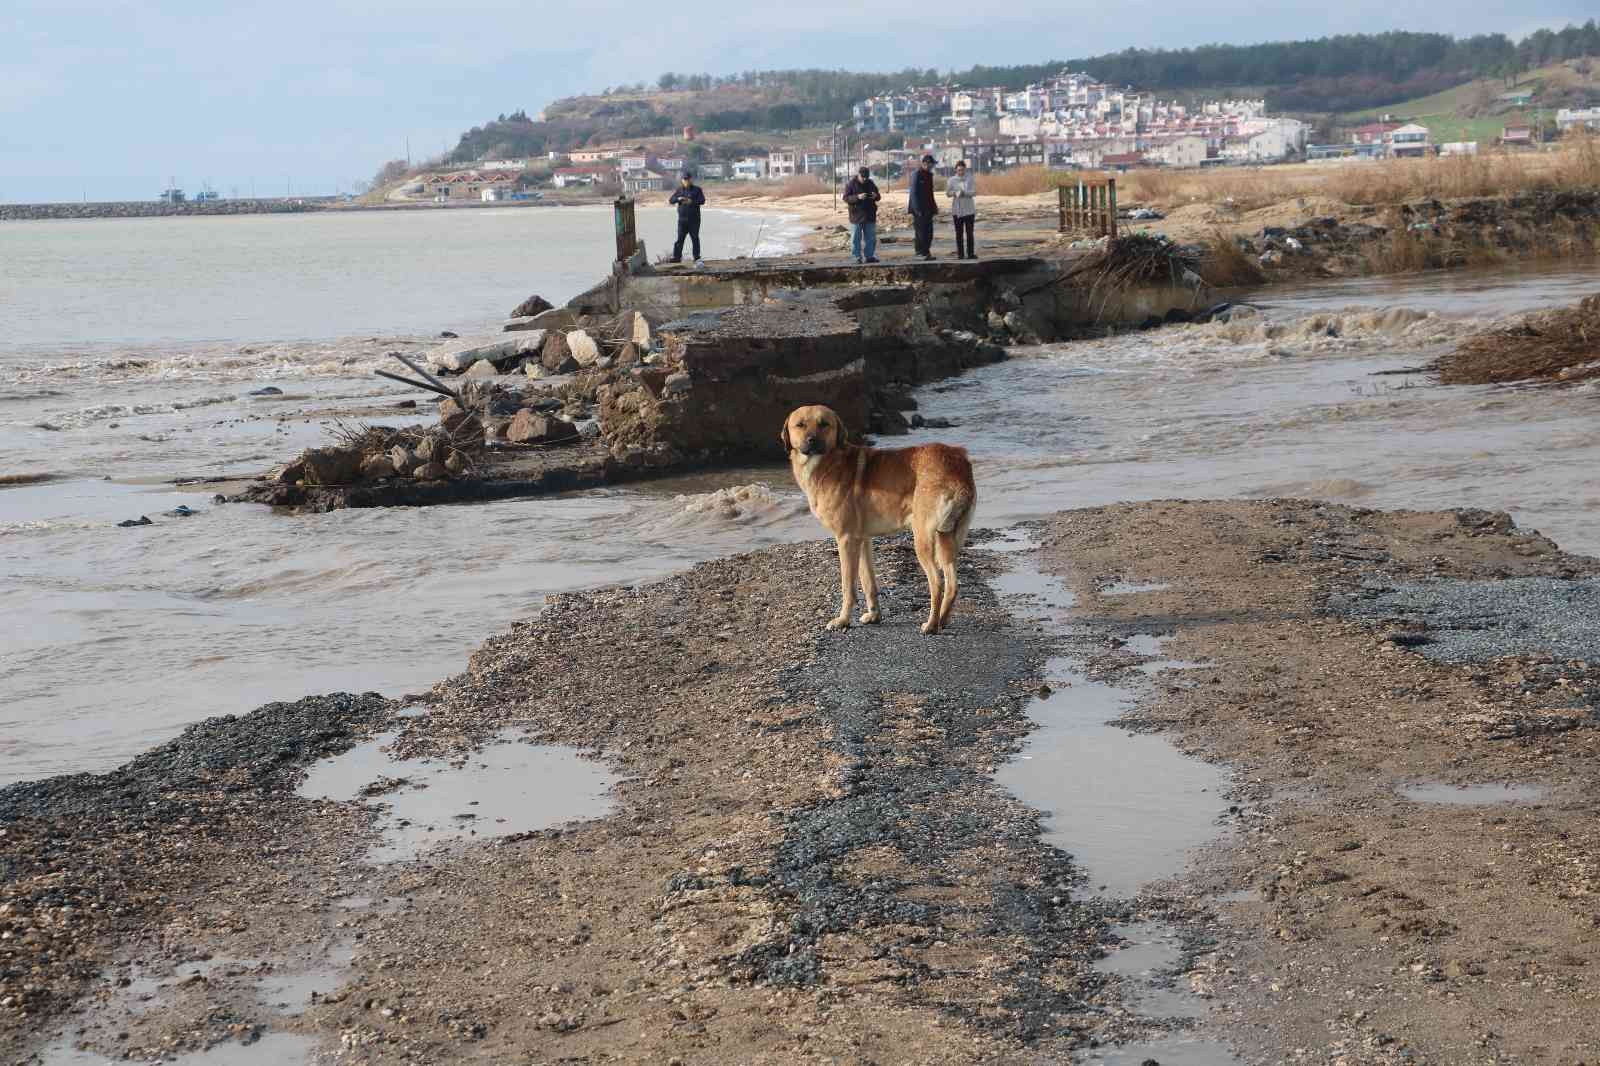 Edirne felaketi yaşıyor, sel sularına dayanamayan köprü yıkıldı #edirne